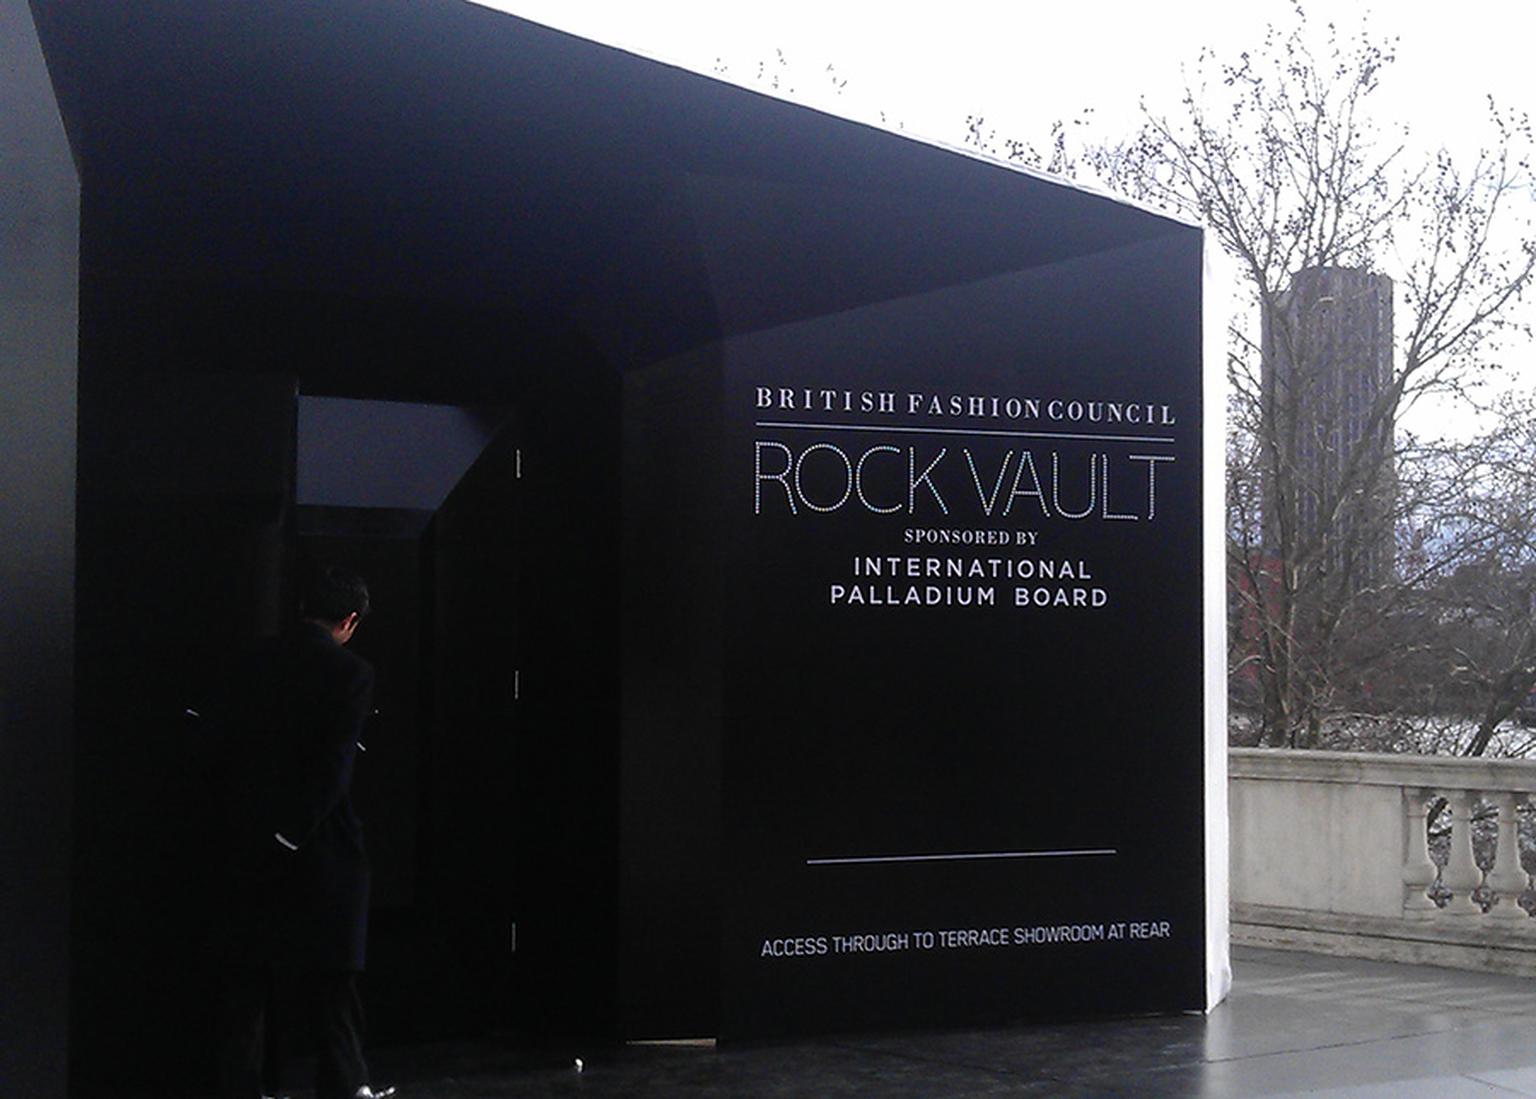 Rock Vault at LFW exterior